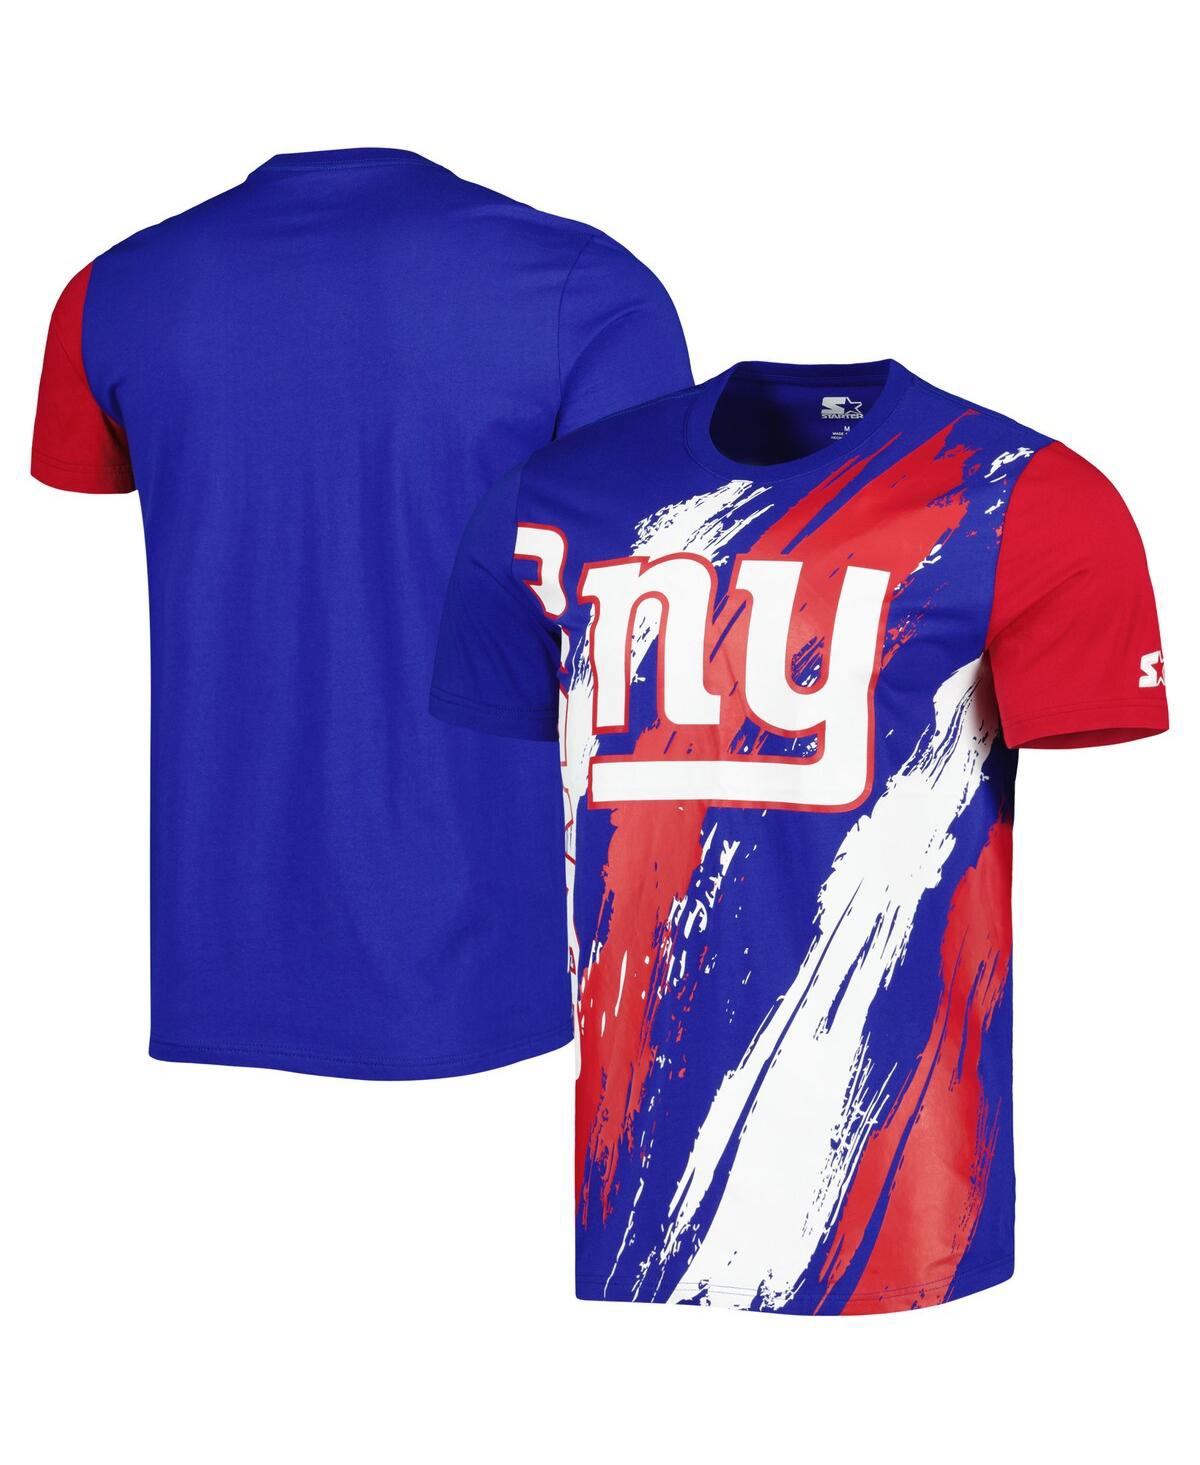 Men's Starter Royal New York Giants Extreme Defender T-shirt - Royal